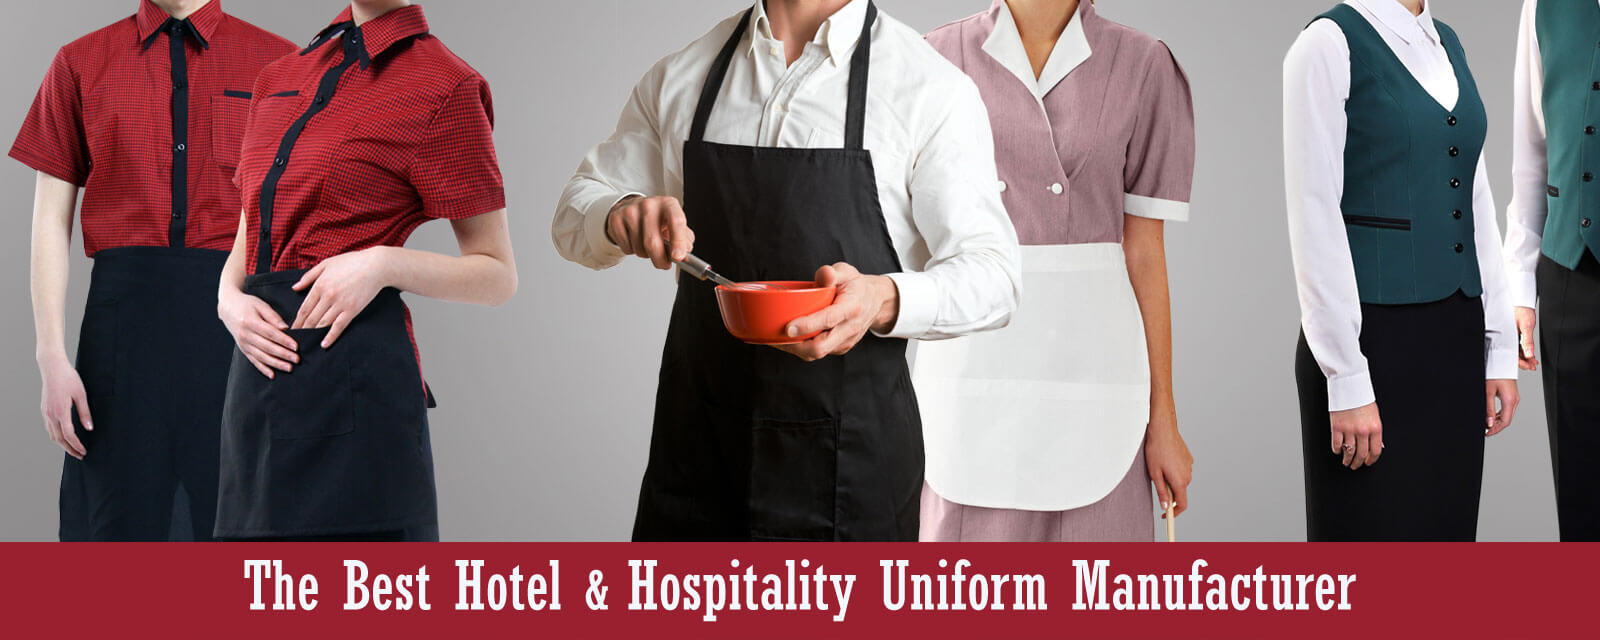 hotel-uniforms-uae